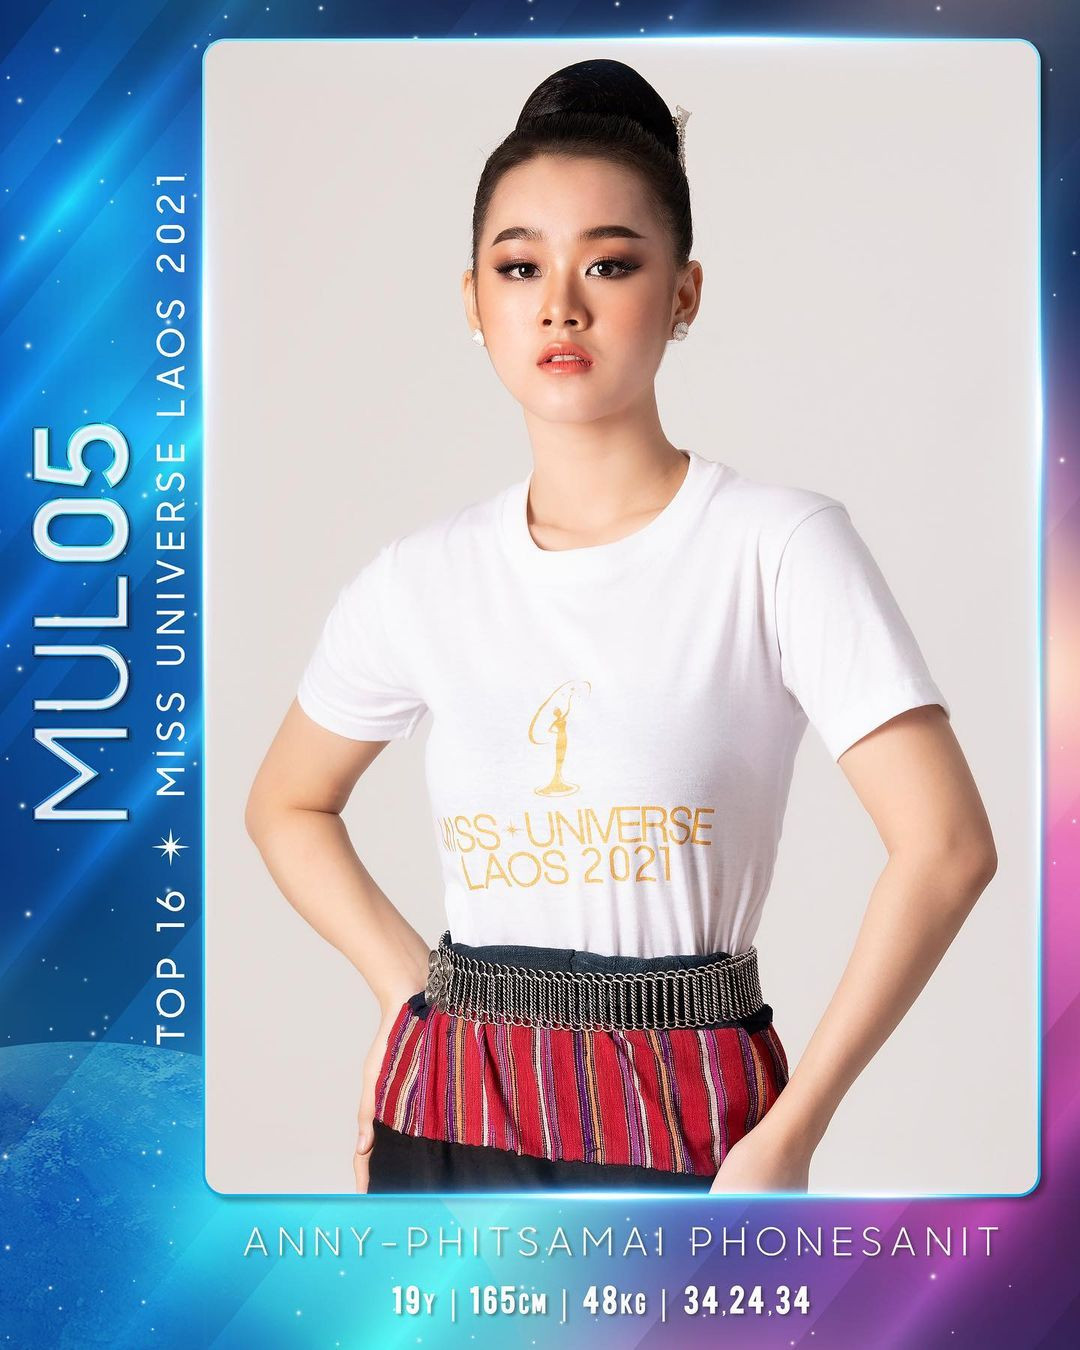 candidatas a miss universe laos 2021. final: 31 oct. 5AN5rv